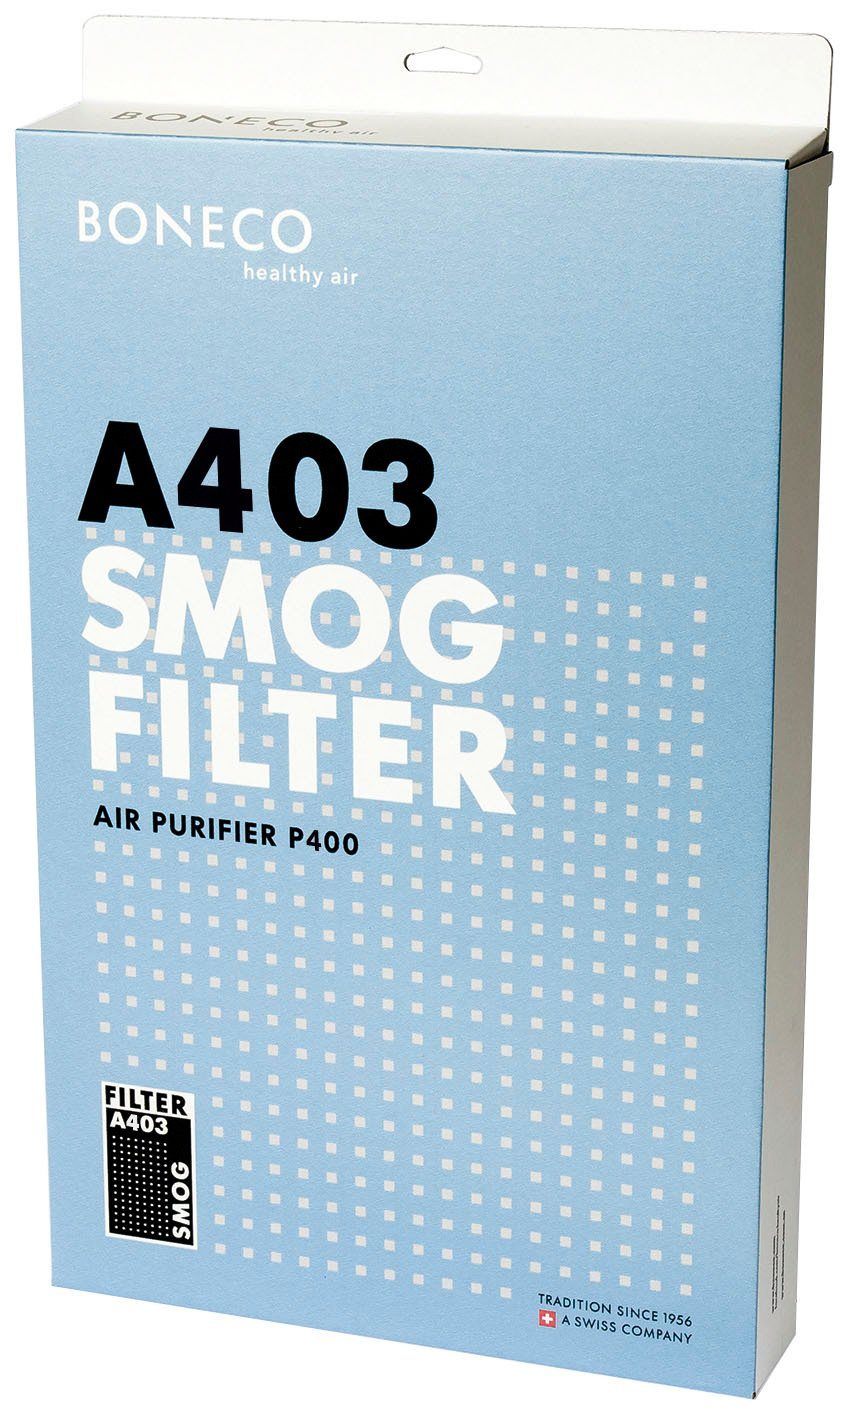 Kombifilter A403, Boneco P400 für Zubehör Luftreiniger Filter Smog